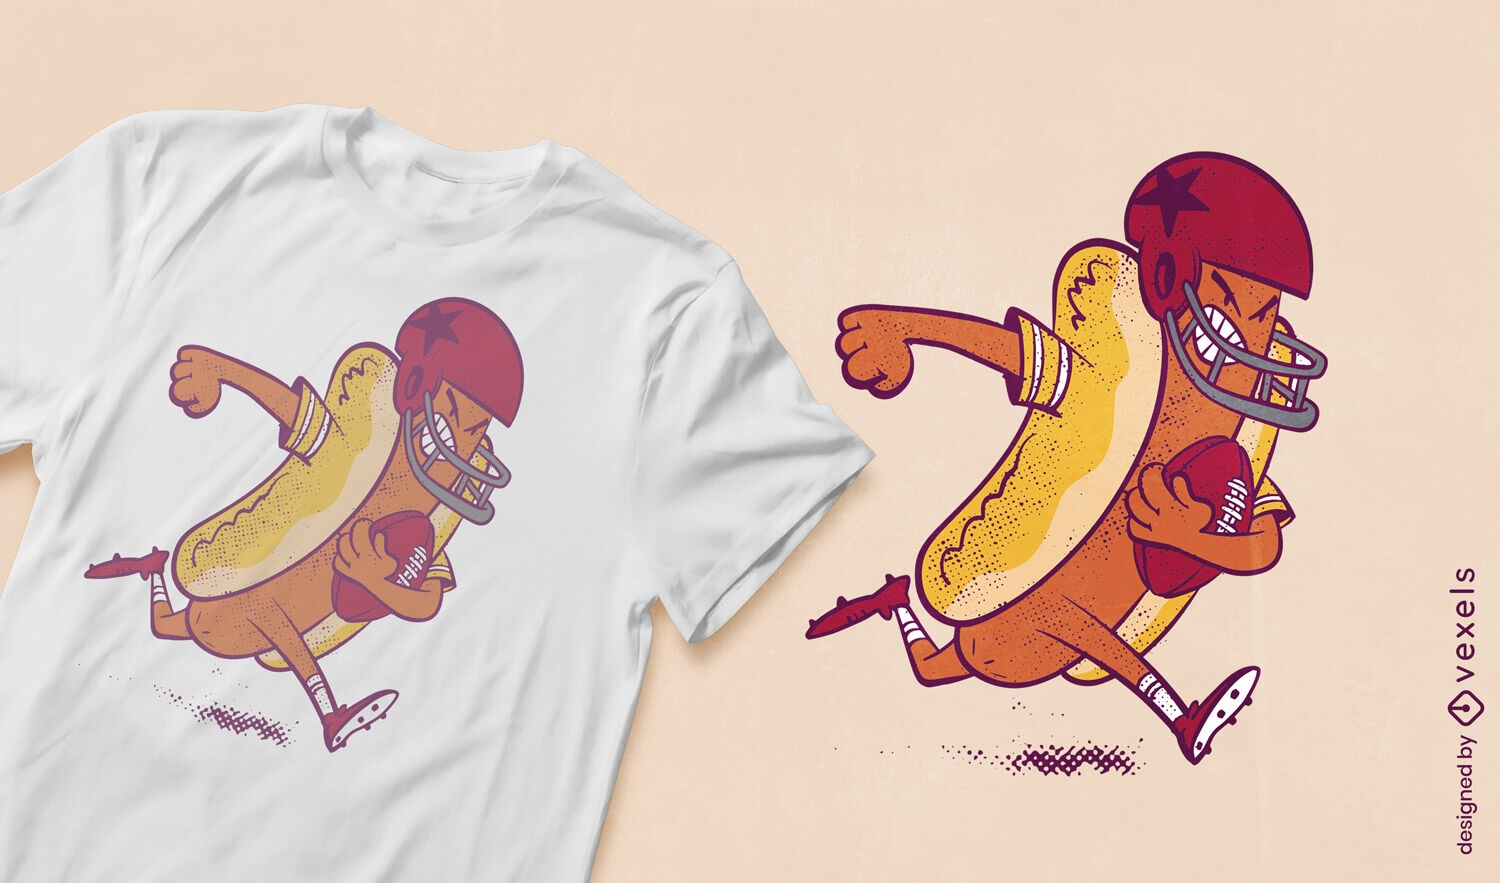 Dise?o de camiseta de jugador de f?tbol hot dog.